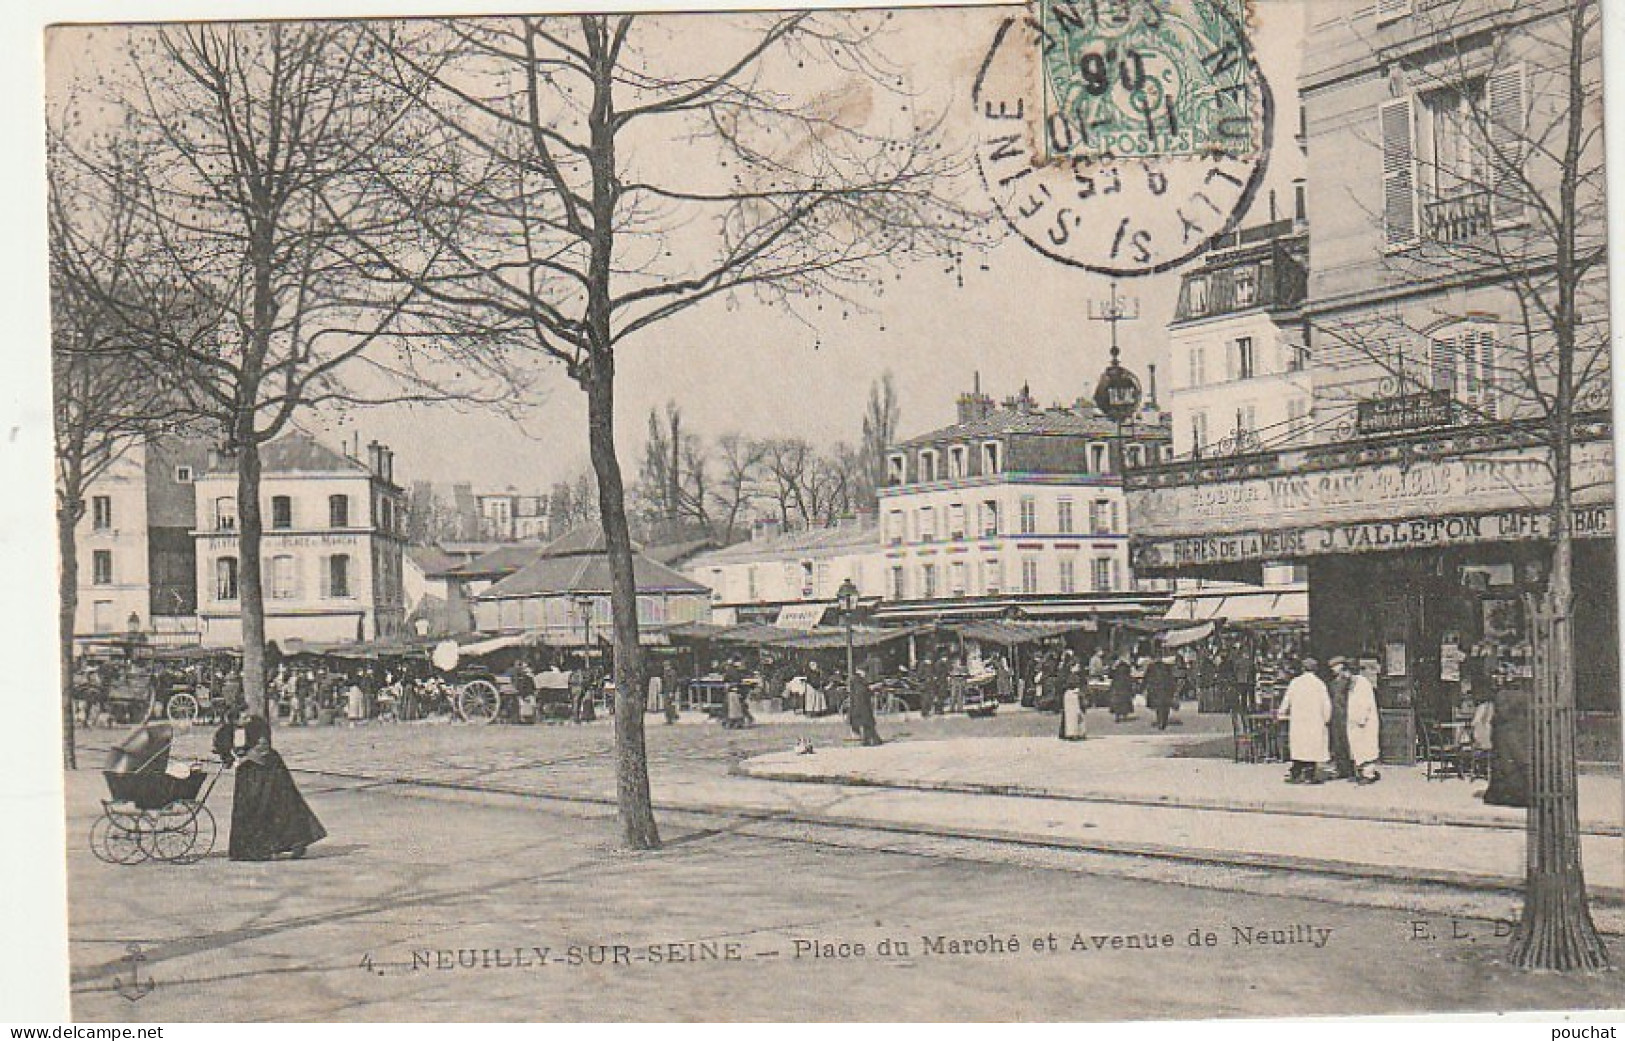 AA+ 120-(92) NEUILLY SUR SEINE - PLACE DU MARCHE ET AVENUE DE NEUILLY - ANIMATION - BAR TABAC J. VALLETON - Neuilly Sur Seine